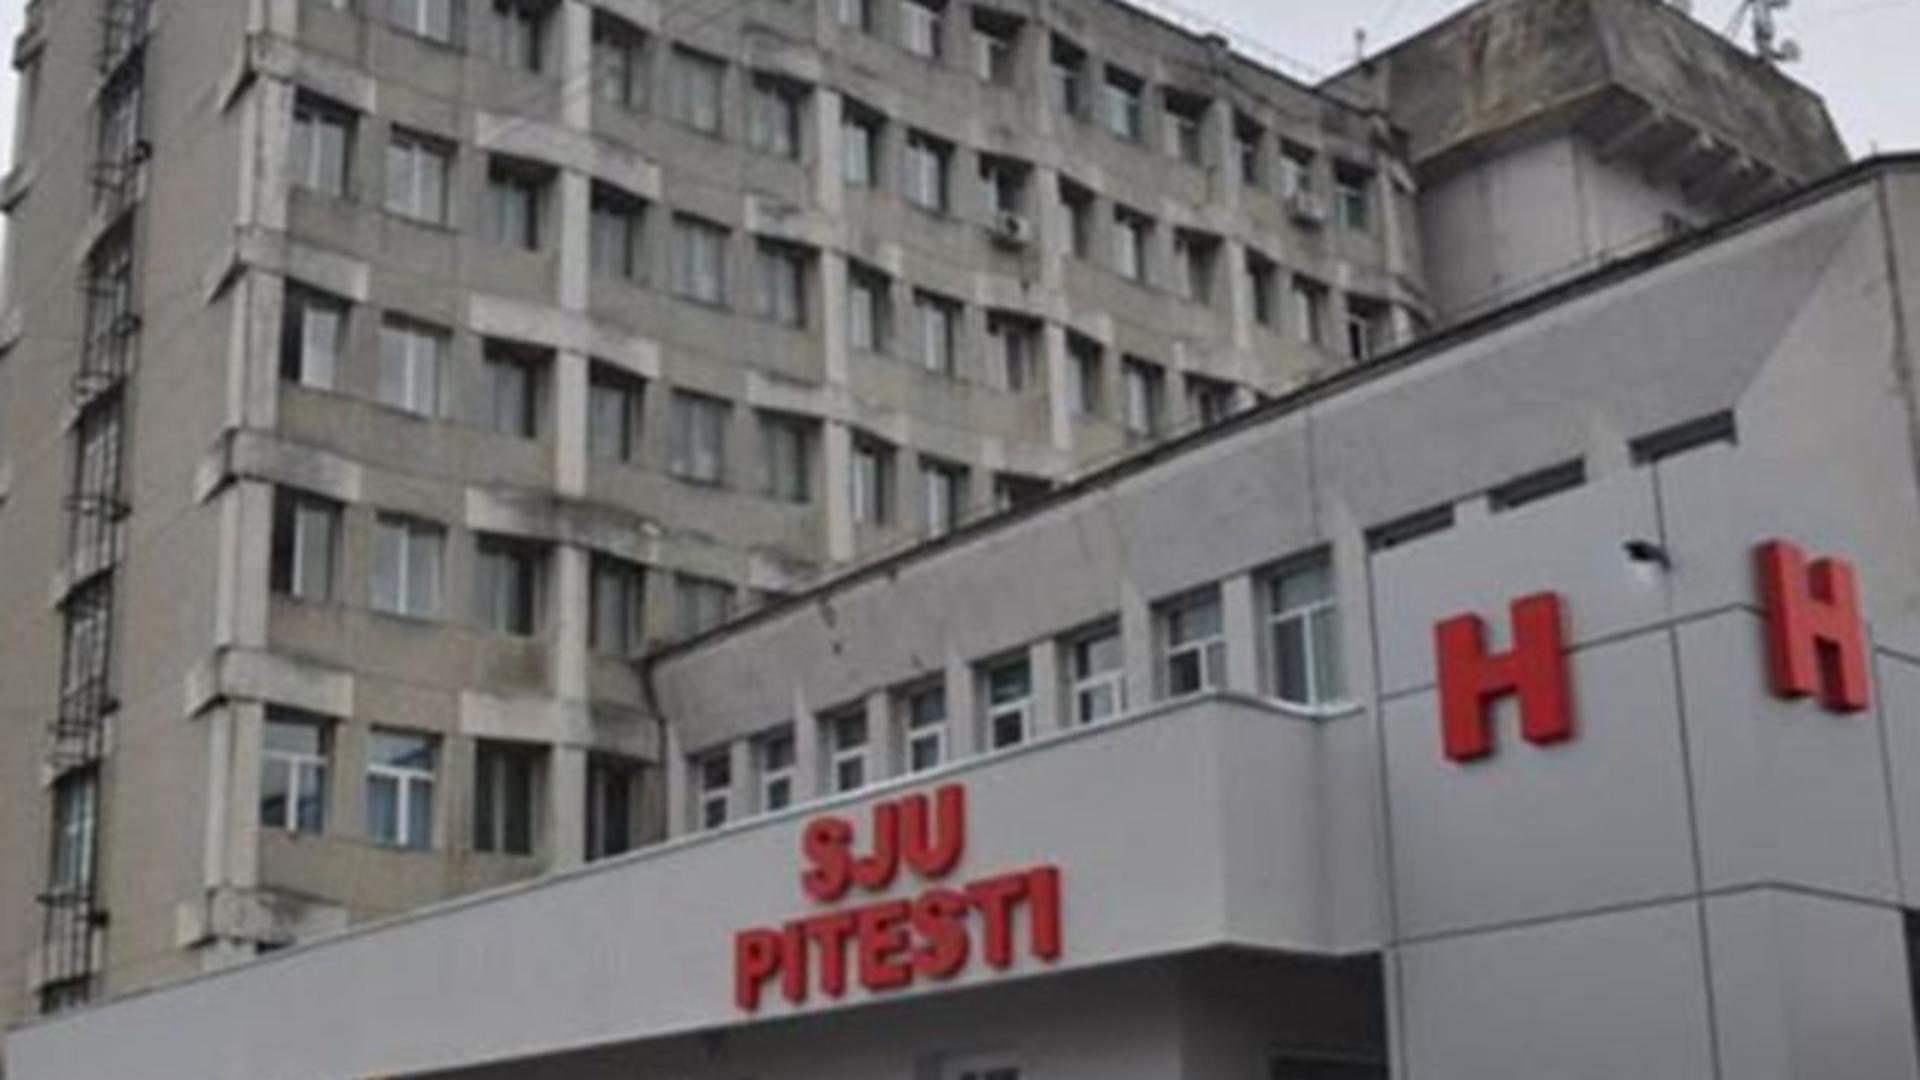 Șefa secției de psihiatrie a Spitalului Județean Pitești a fost reținută. Primea șpăgi pe bandă rulantă, procurorii cer arestarea